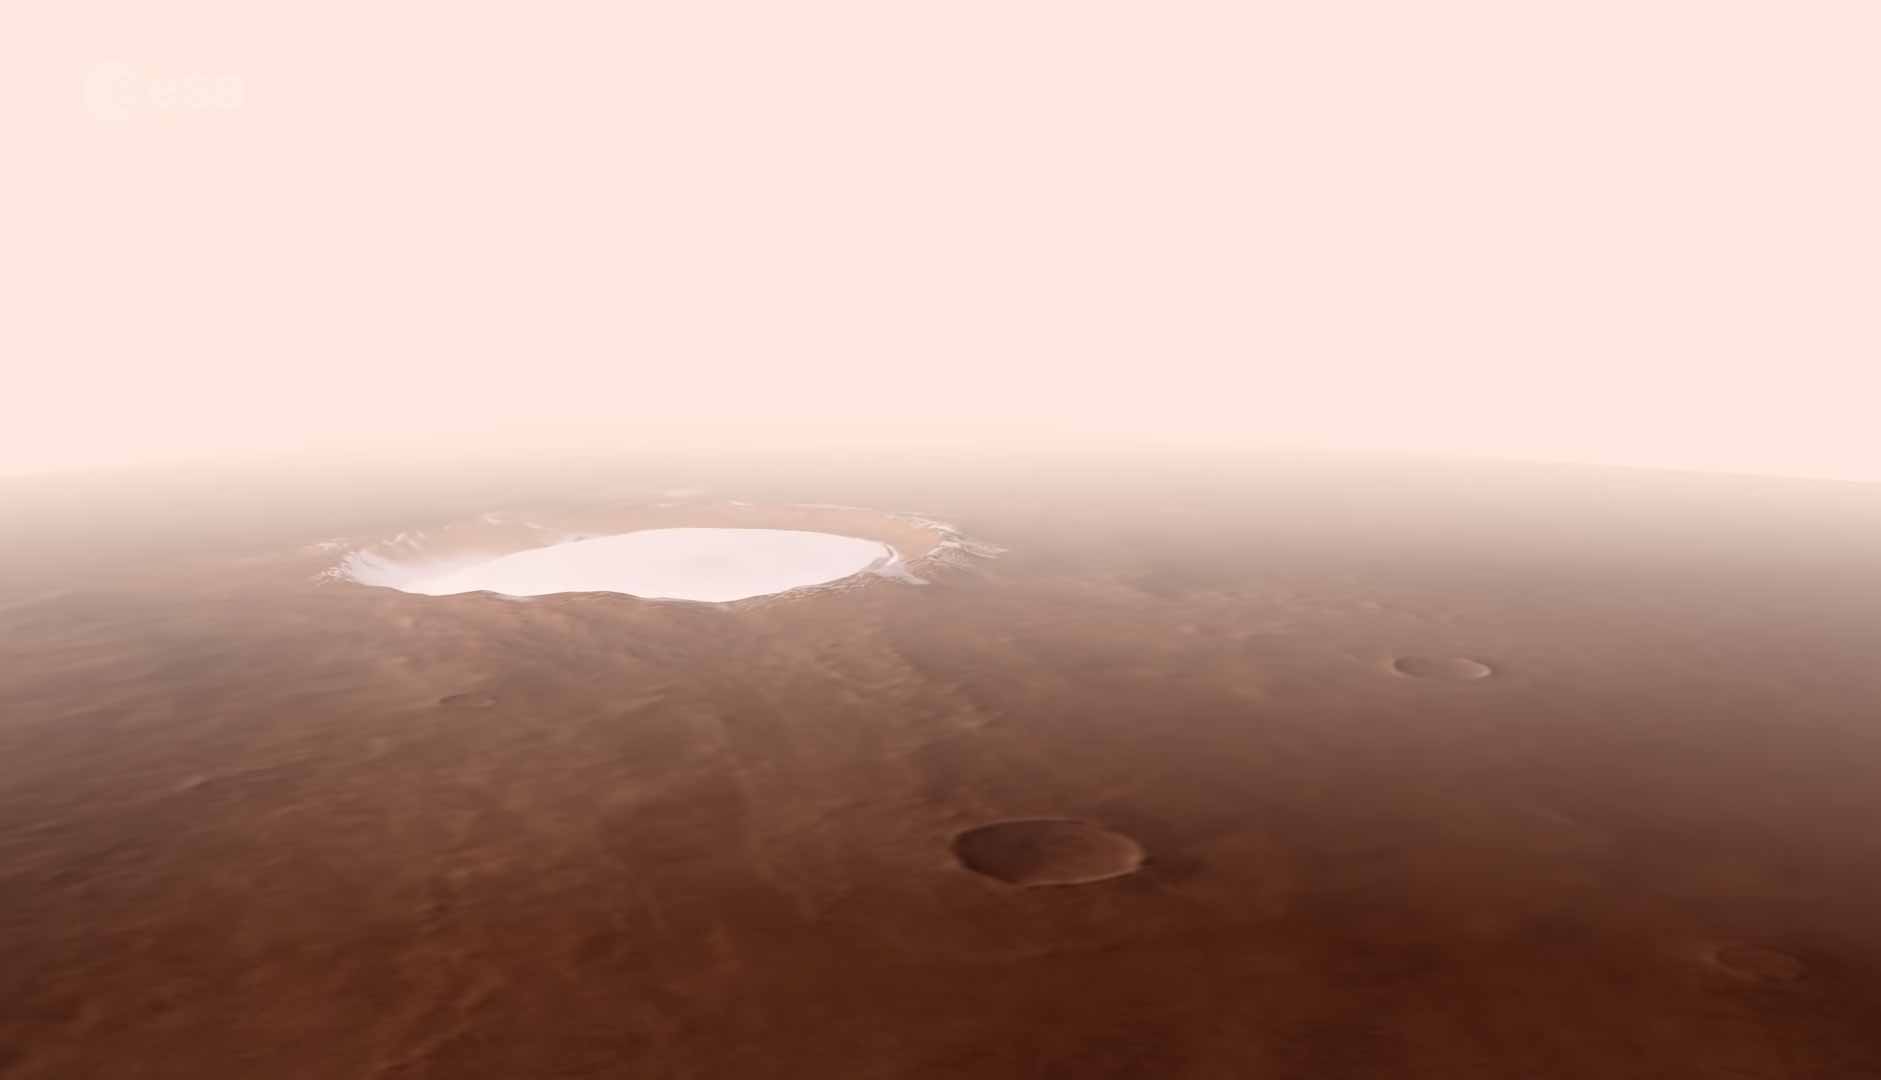 Vídeo mostra uma cratera congelada em Marte. Foto: Reprodução Youtube